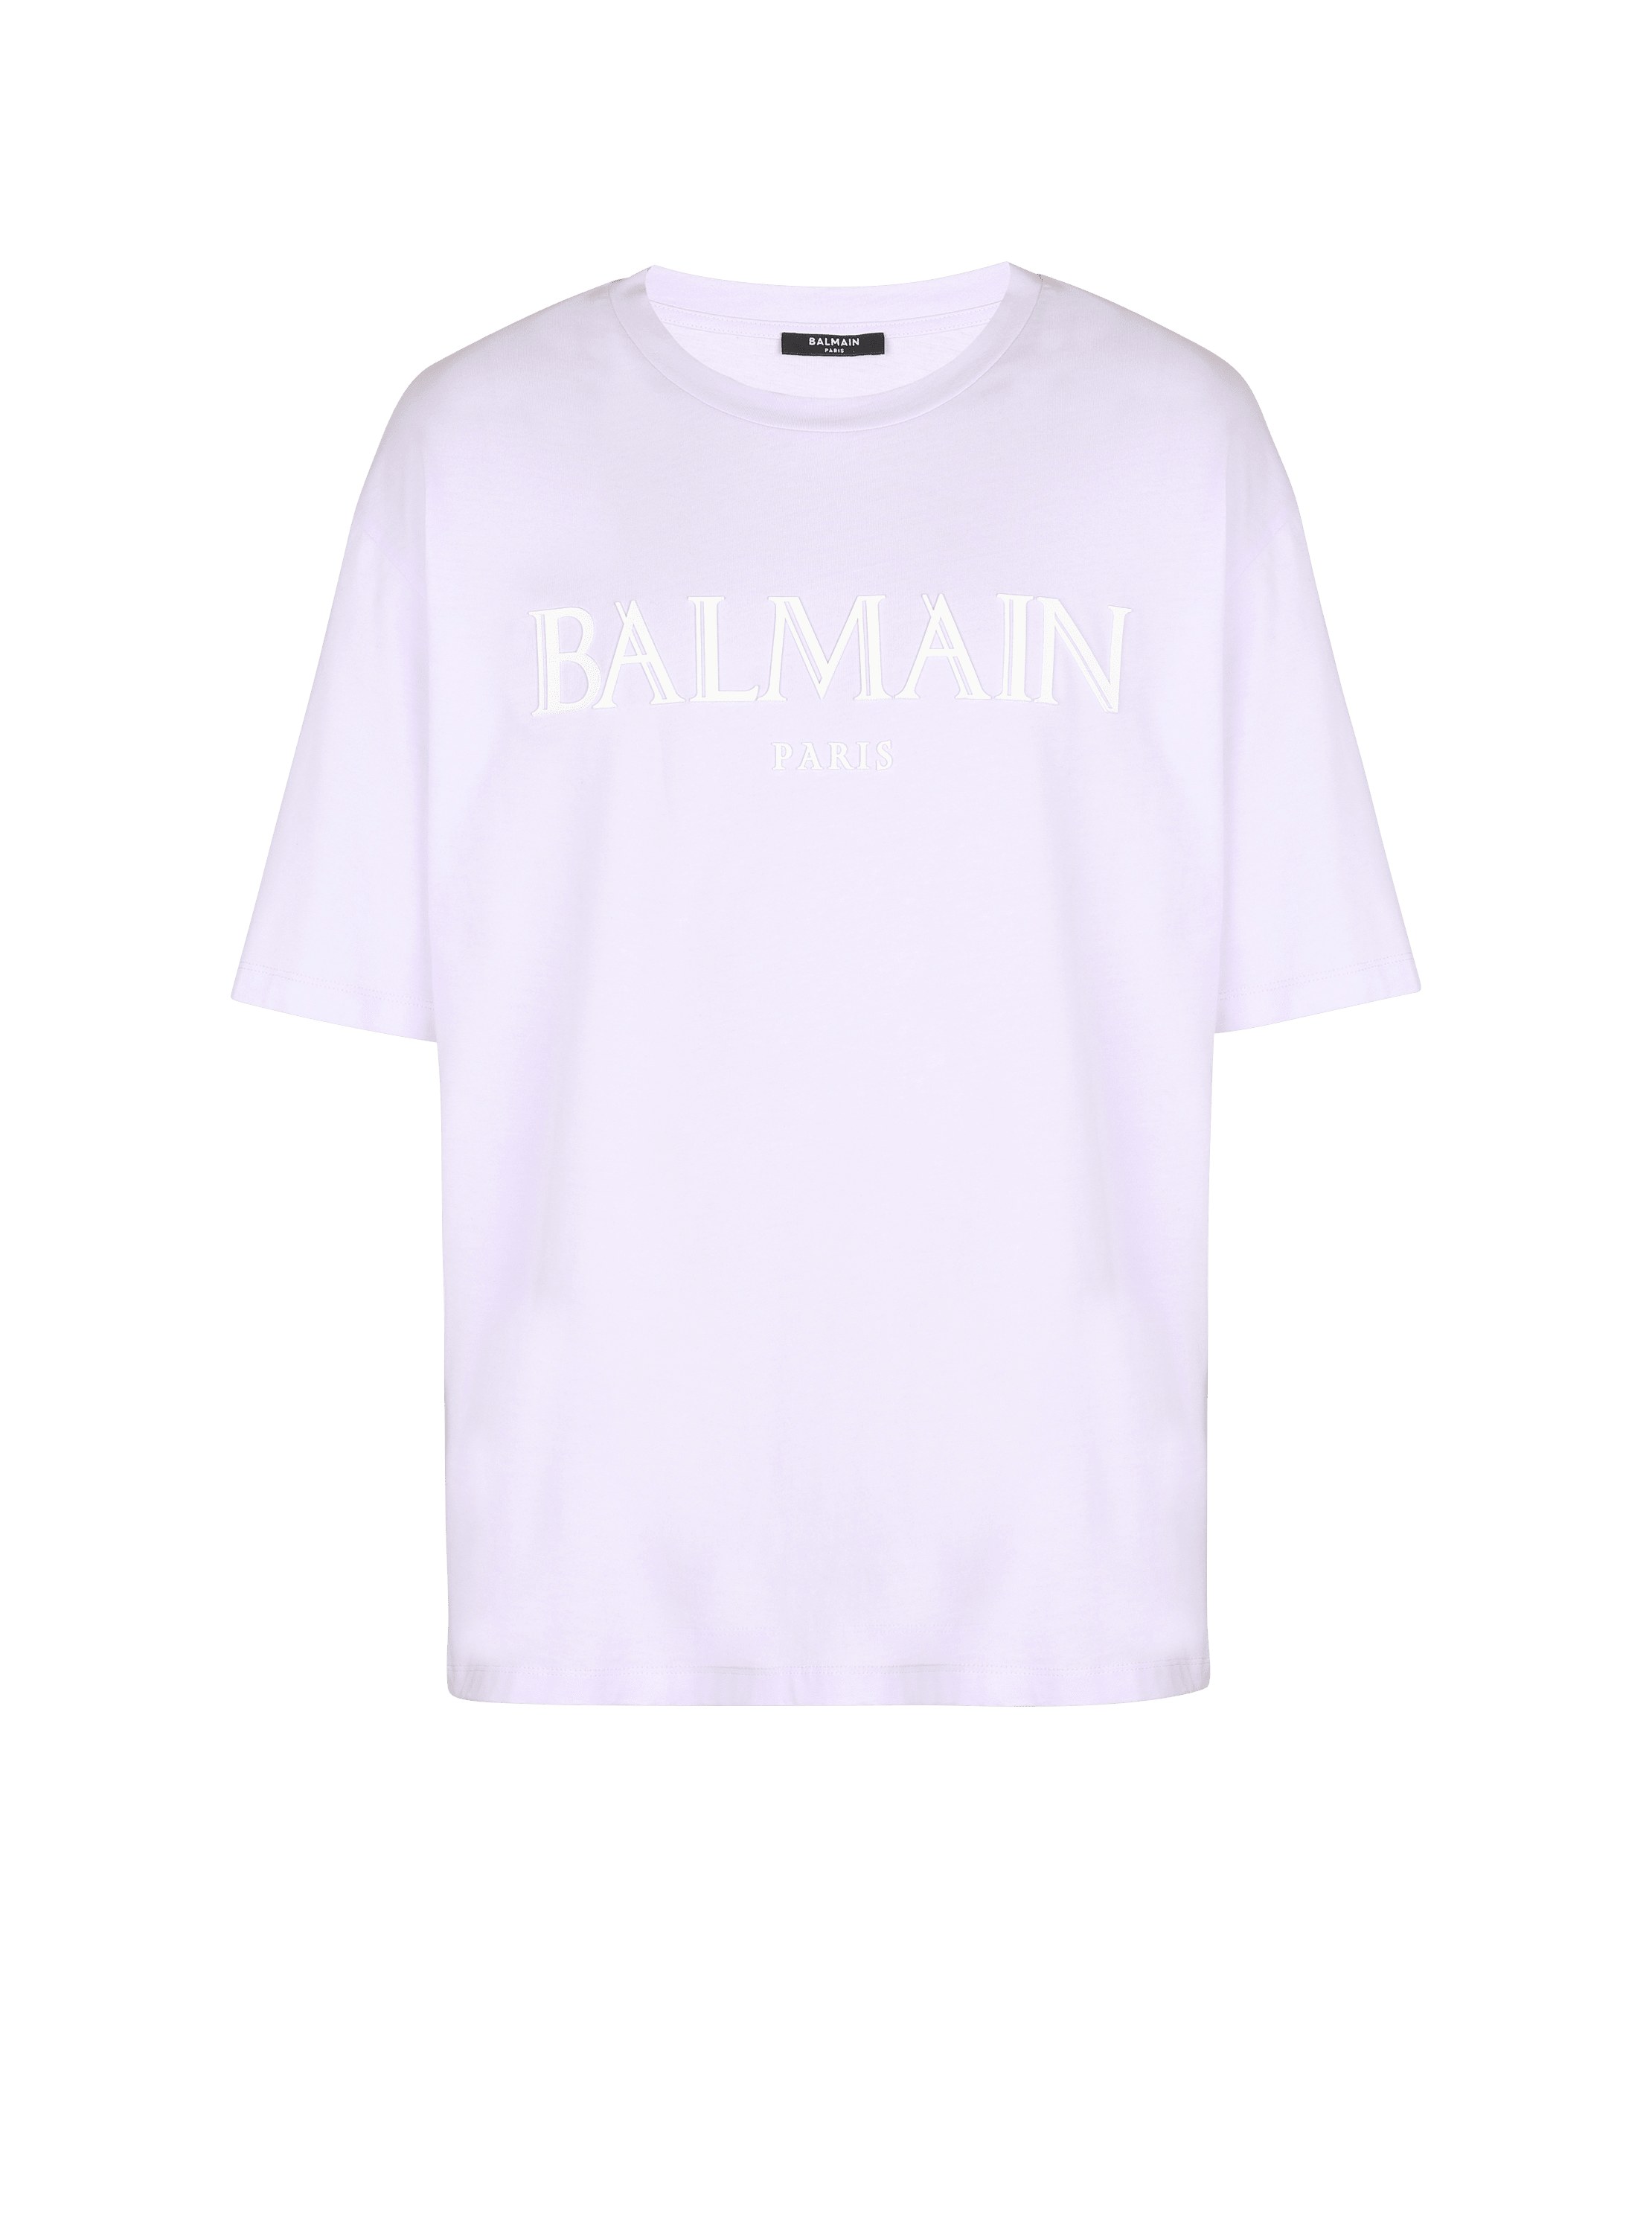 Oversize-T-Shirt mit römischem Balmain-Logo aus Kautschuk, violett, hi-res